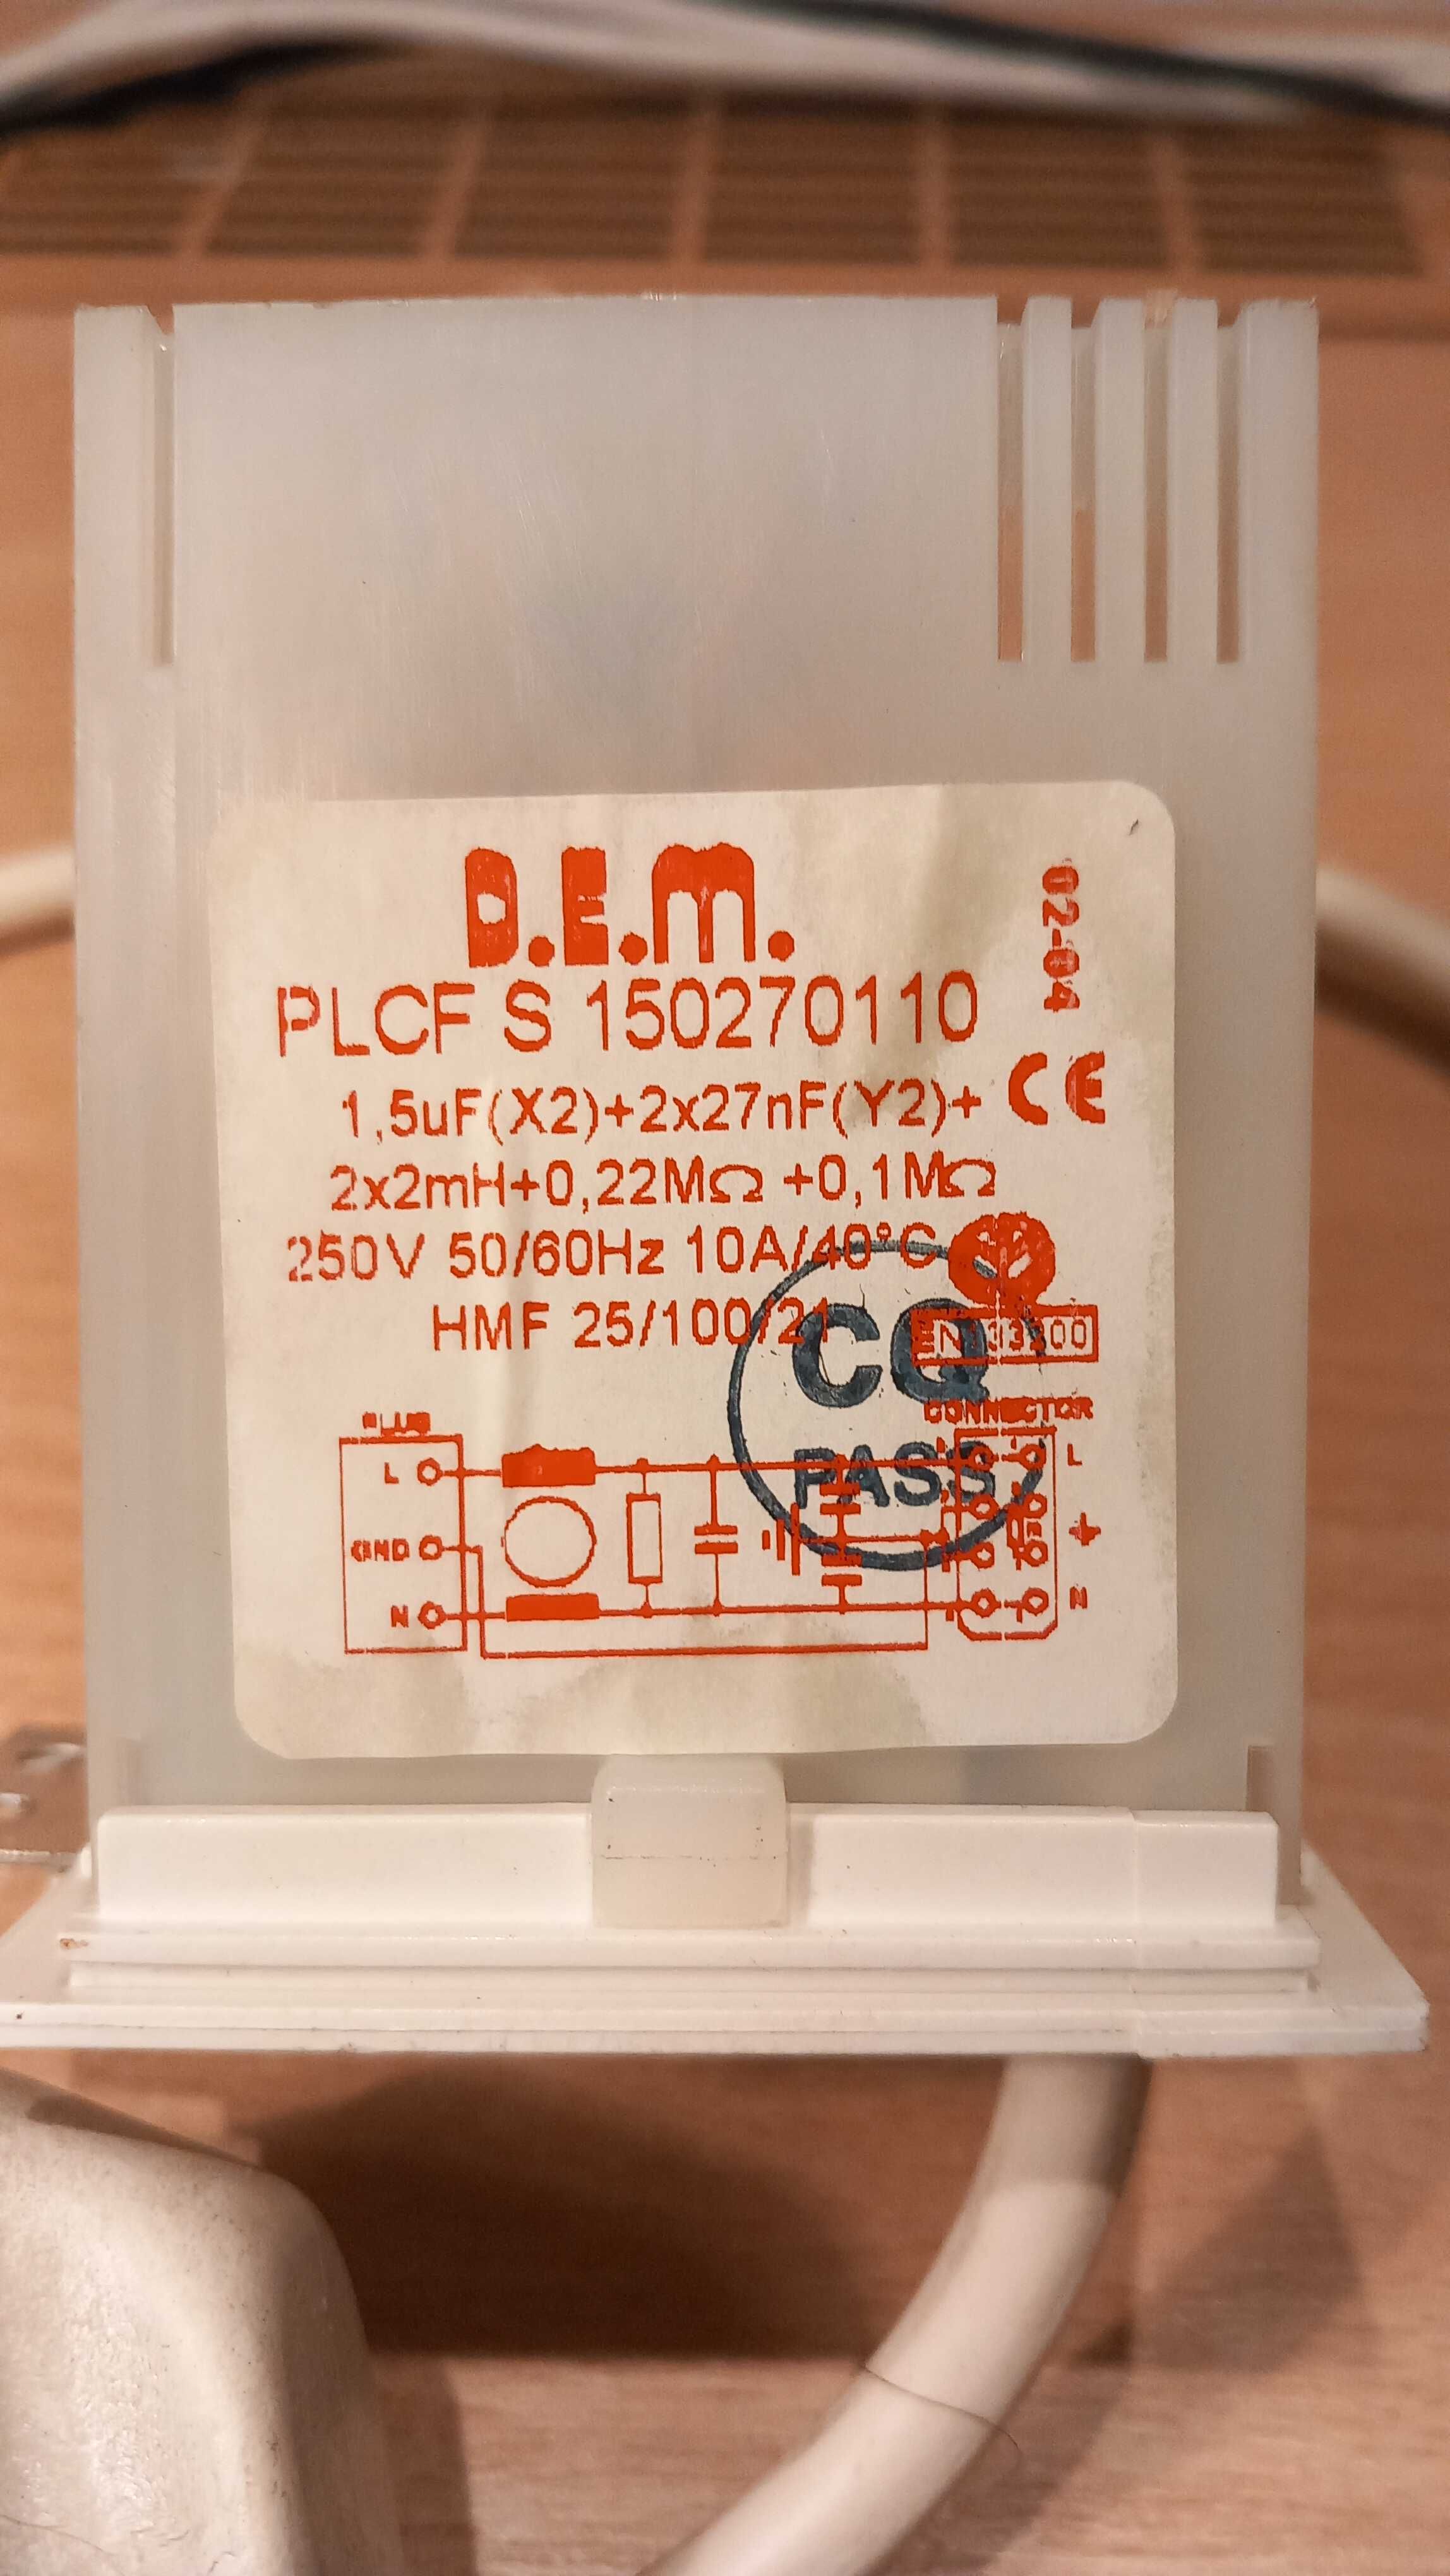 Filtr przeciwzakłóceniowy PLCF S z pralki Ariston AVSD 109 EU